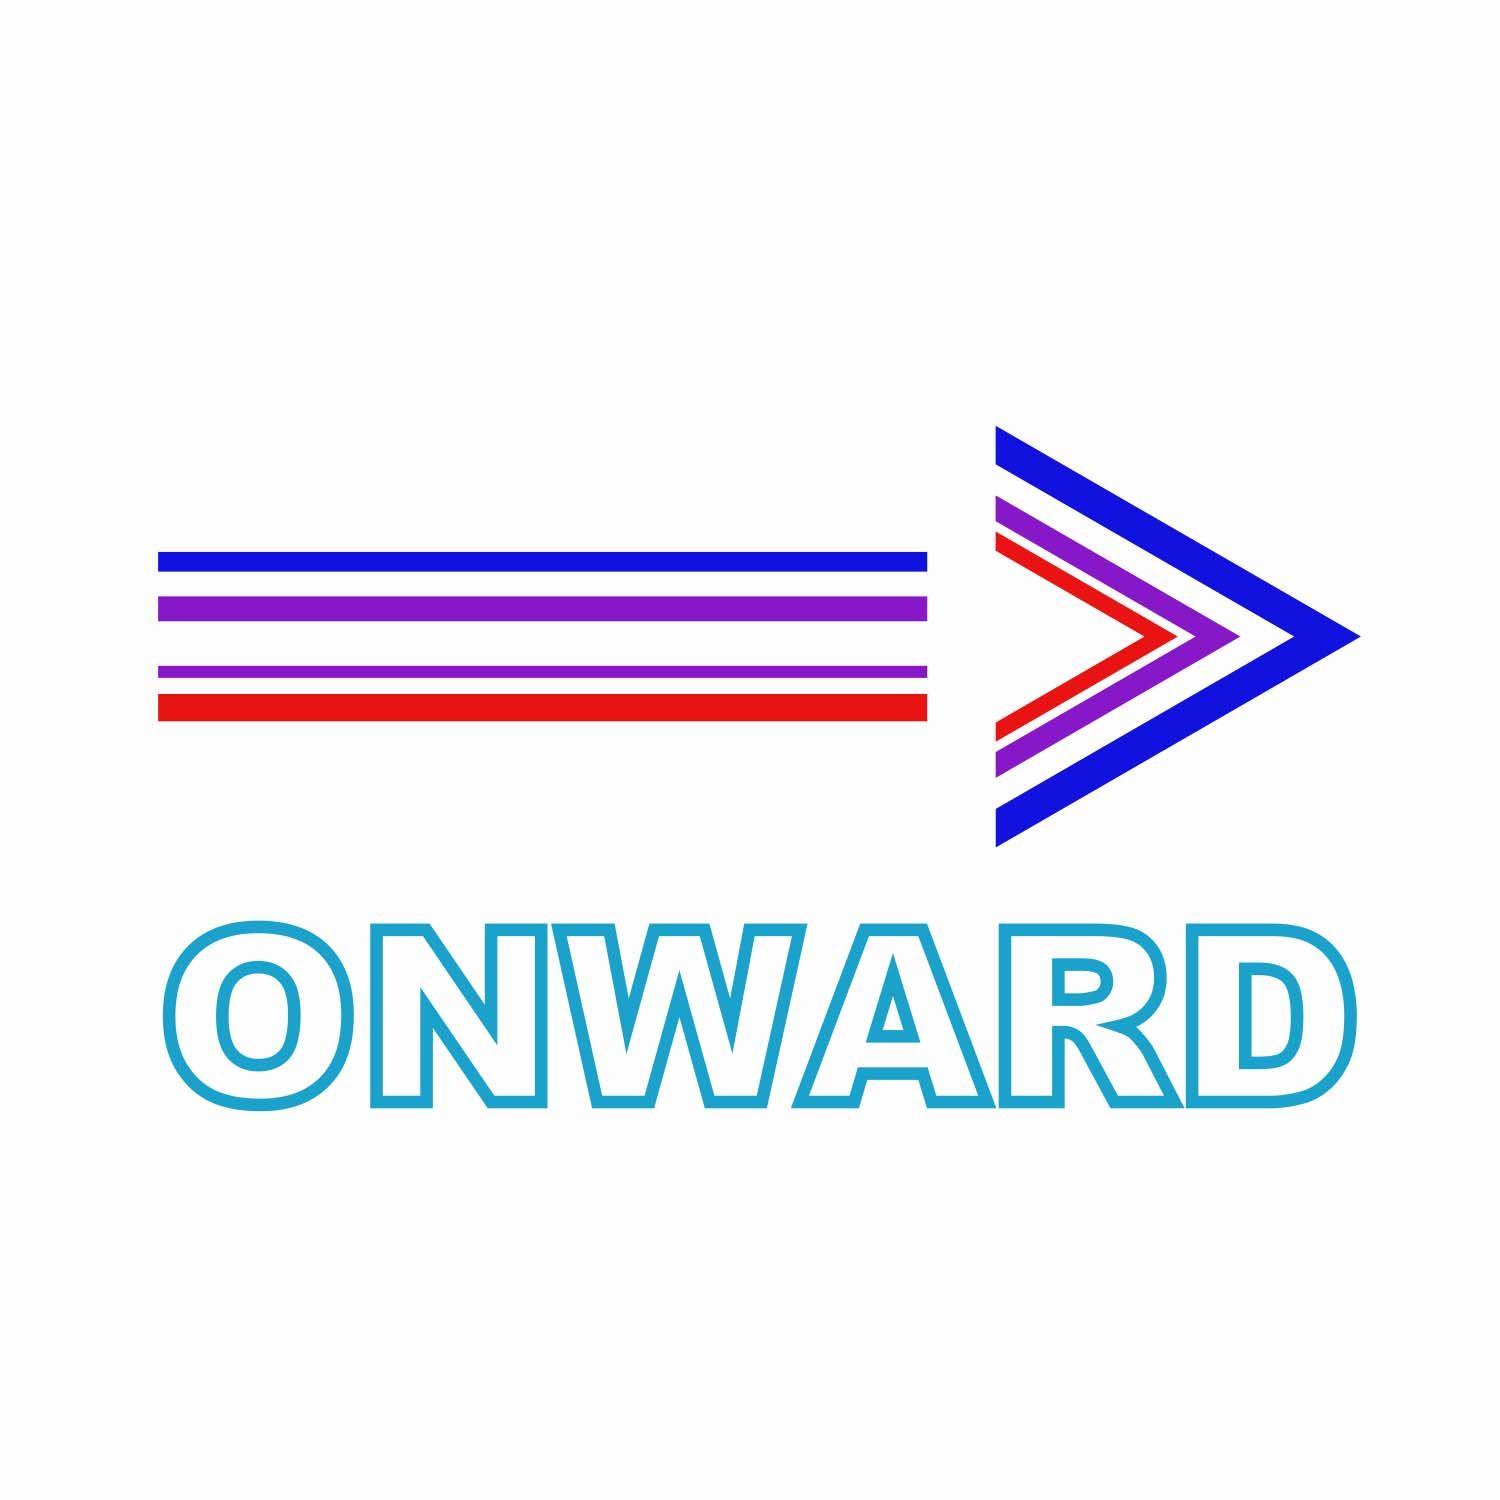 Onward Logo - Onward Logo Made with Adobe Illustrator CC 2018 | Logos | Pinterest ...